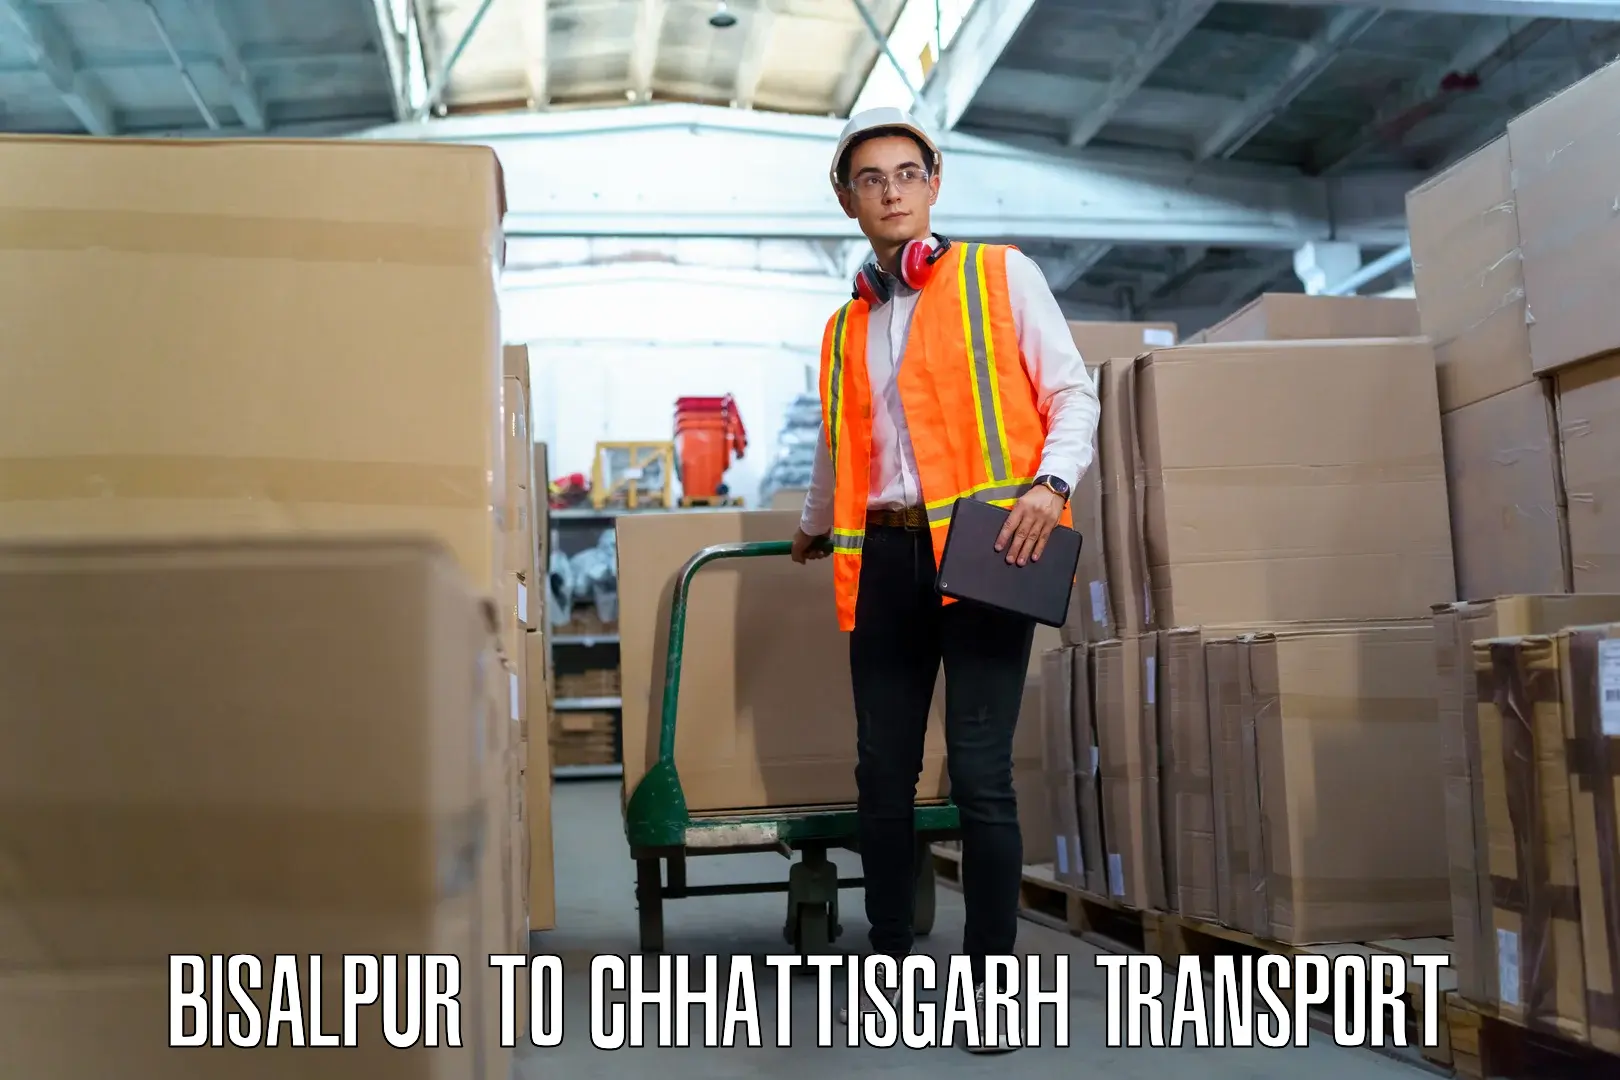 Furniture transport service Bisalpur to Jaijaipur